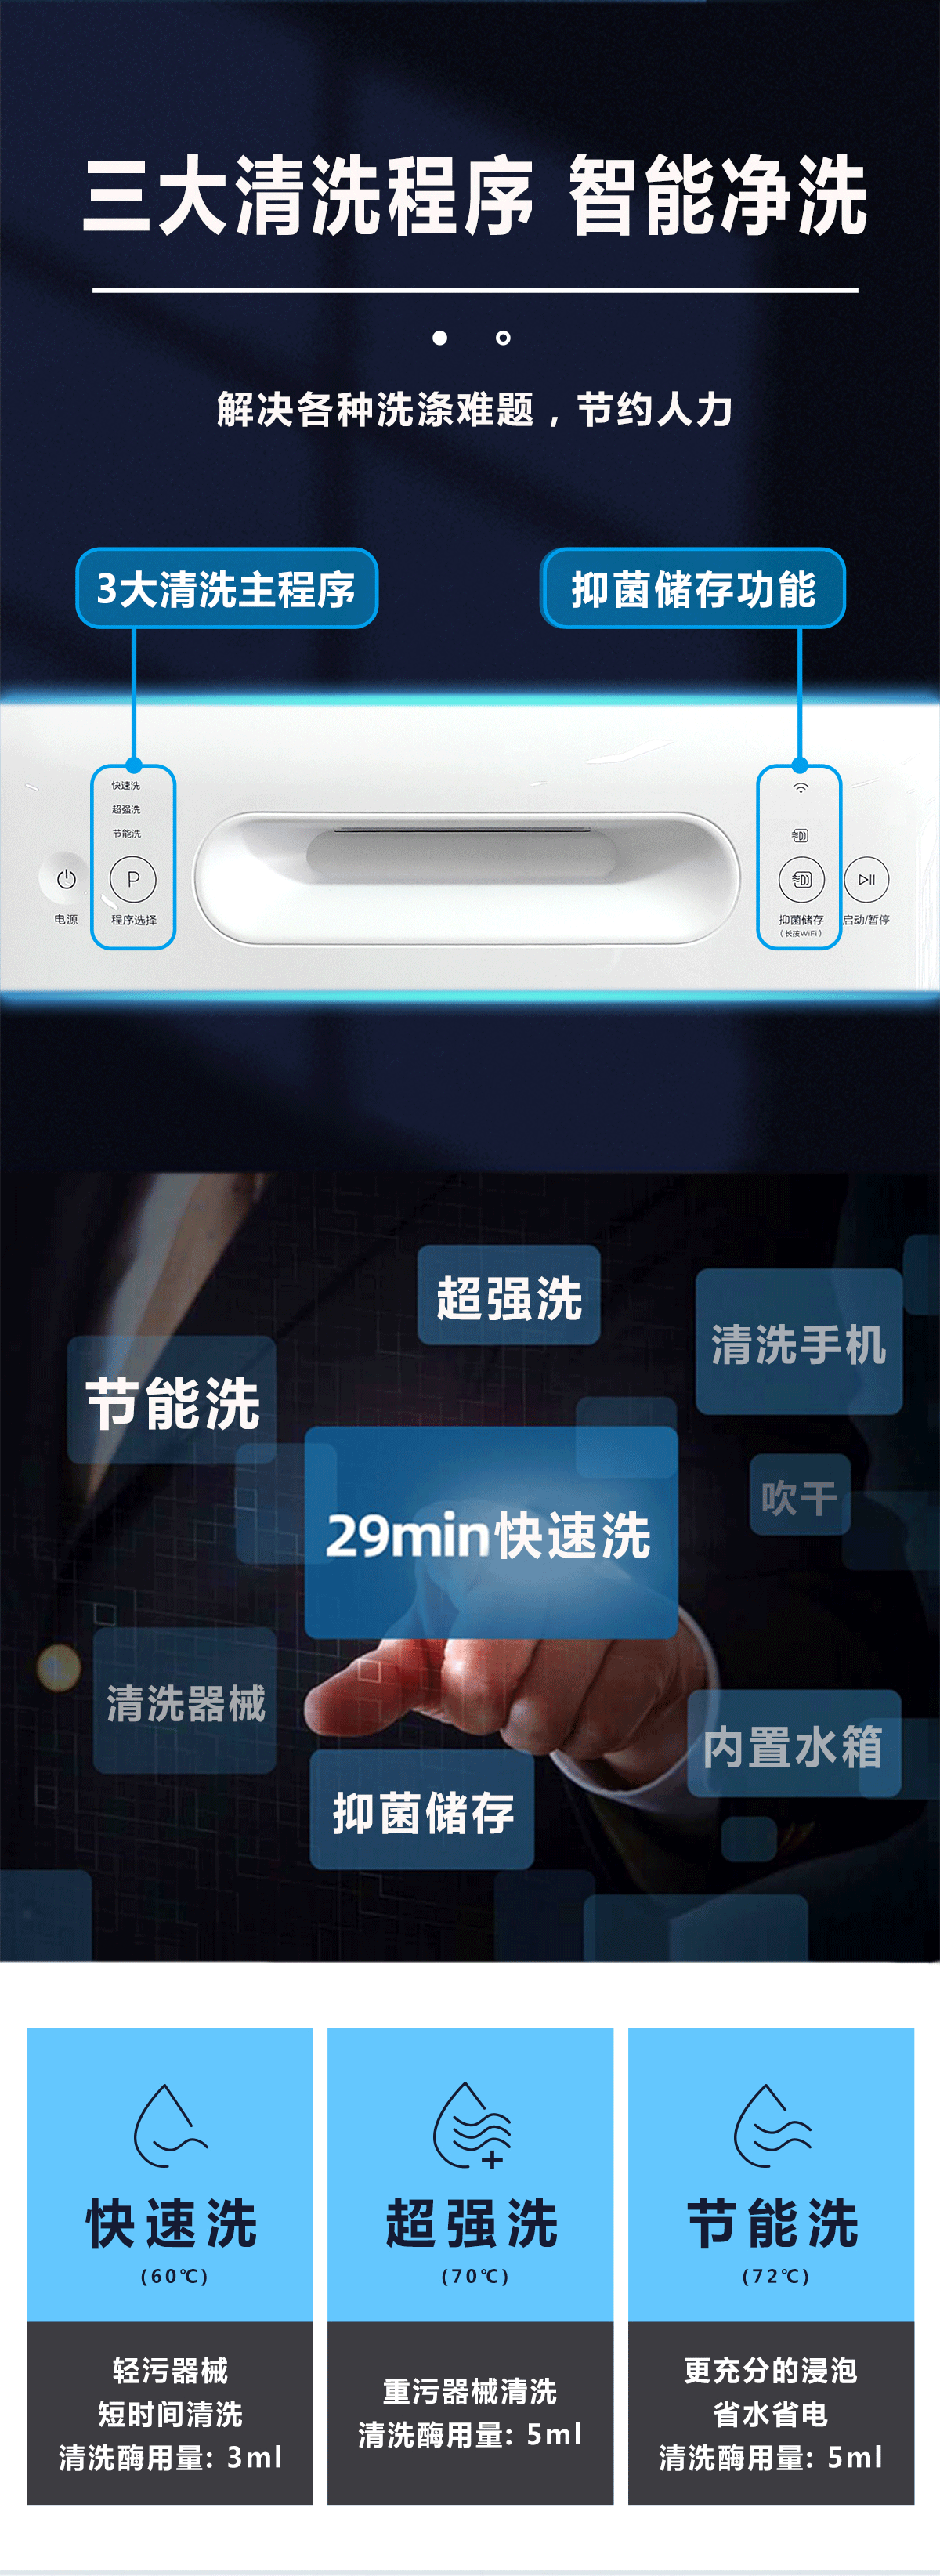 清洗机-产品详情页-1200_03.png